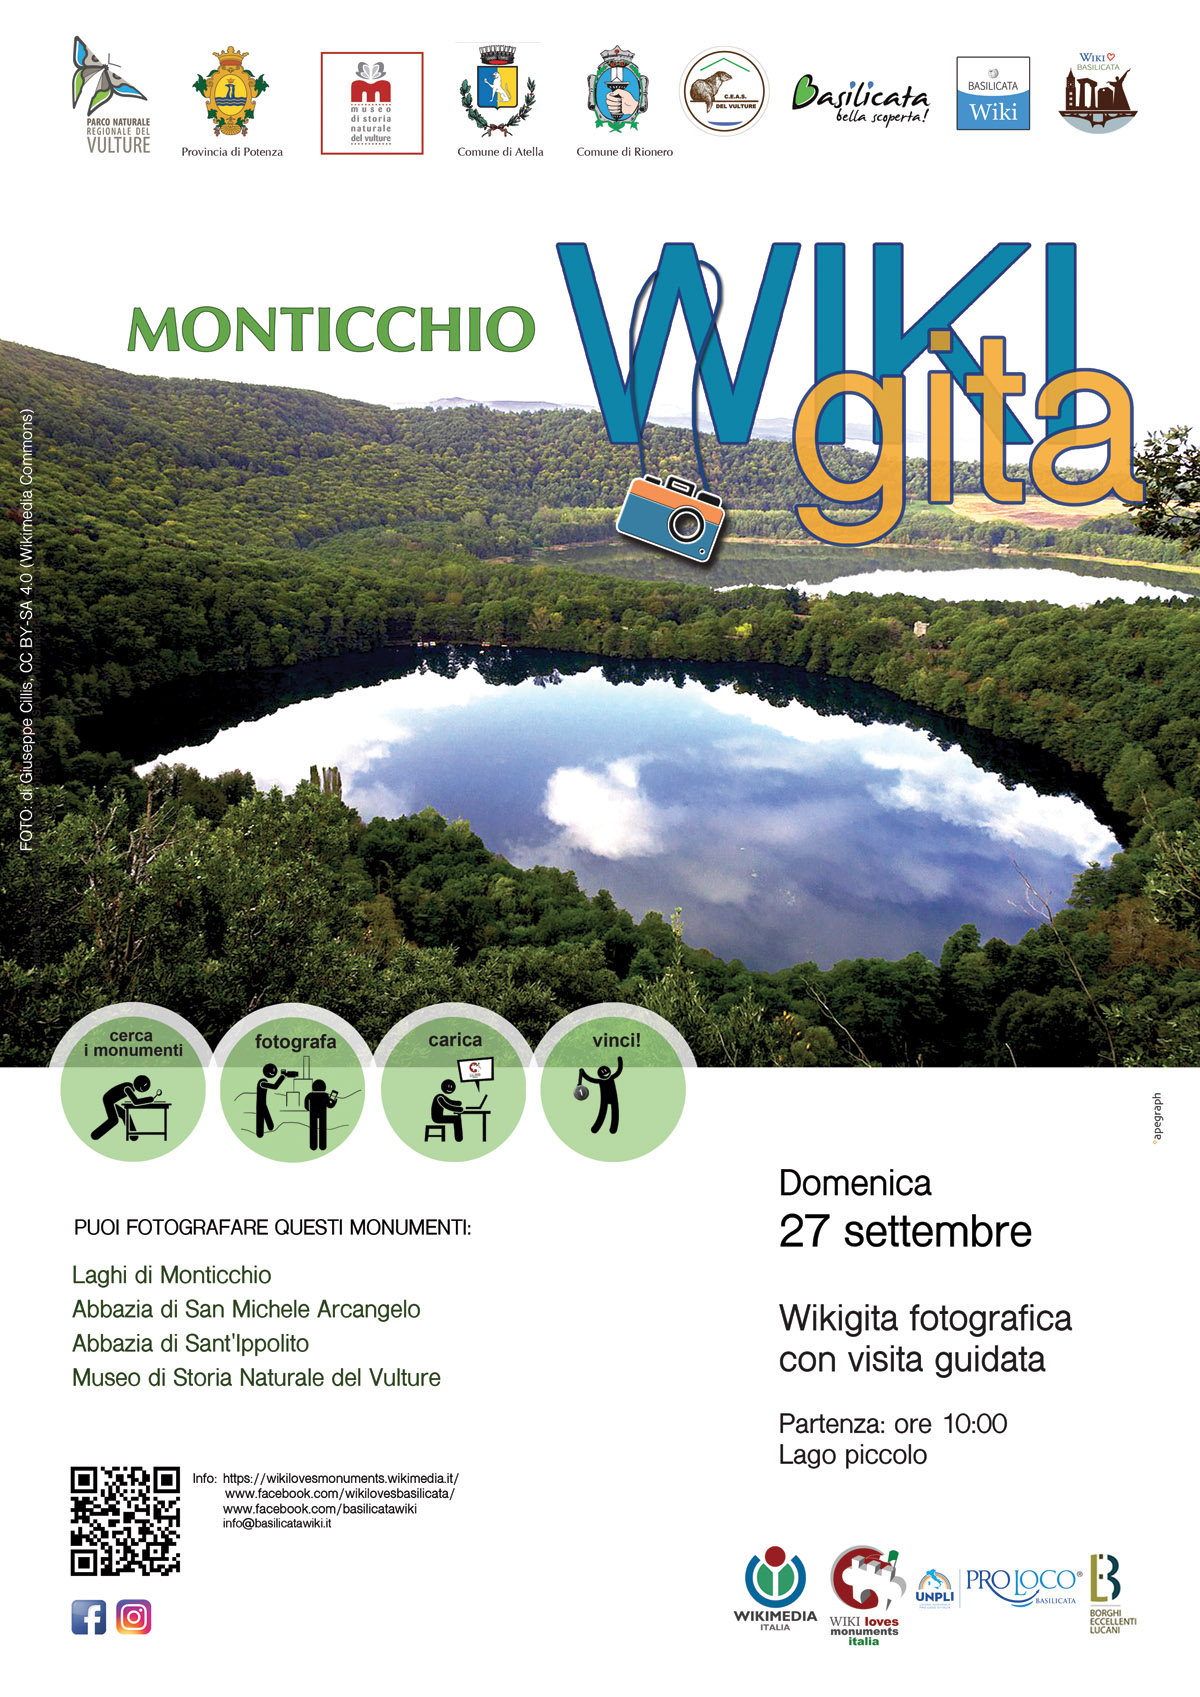 WEB - WGita MONTICCHIO 2020jpg